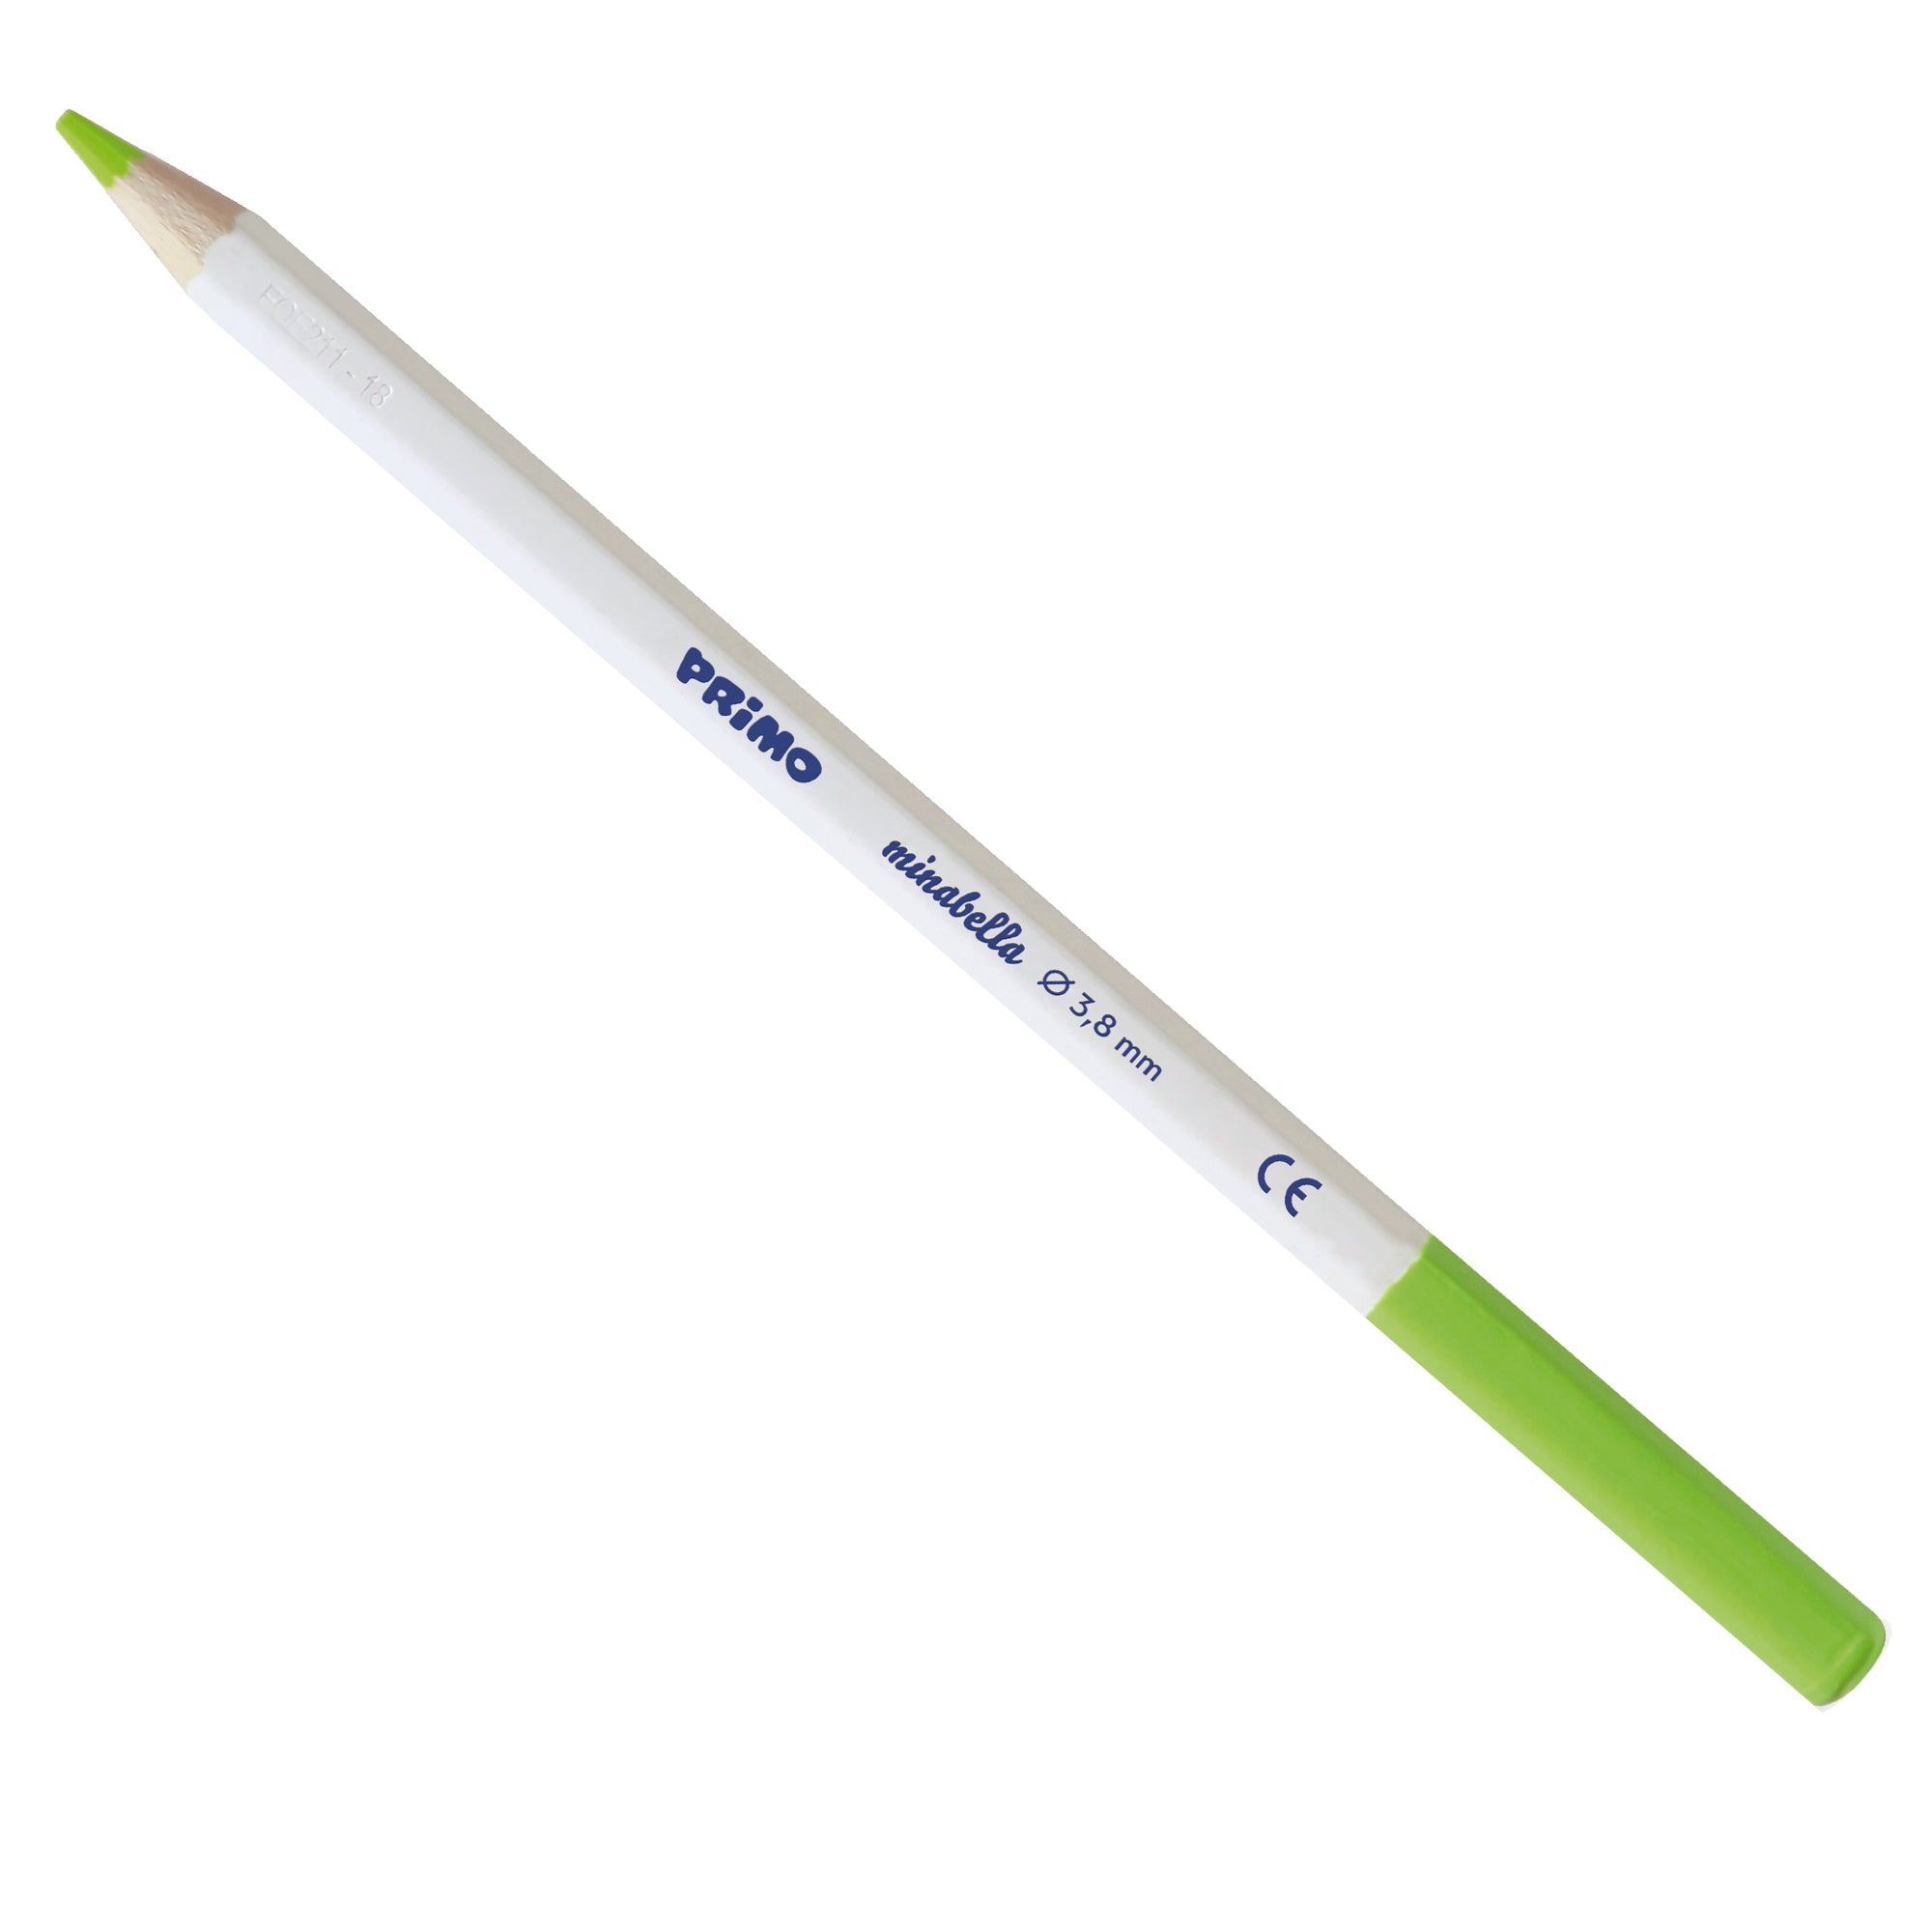 primo-morocolor-astuccio-6-matite-minabella-diam-3-8mm-colori-fluo-assortiti-primo